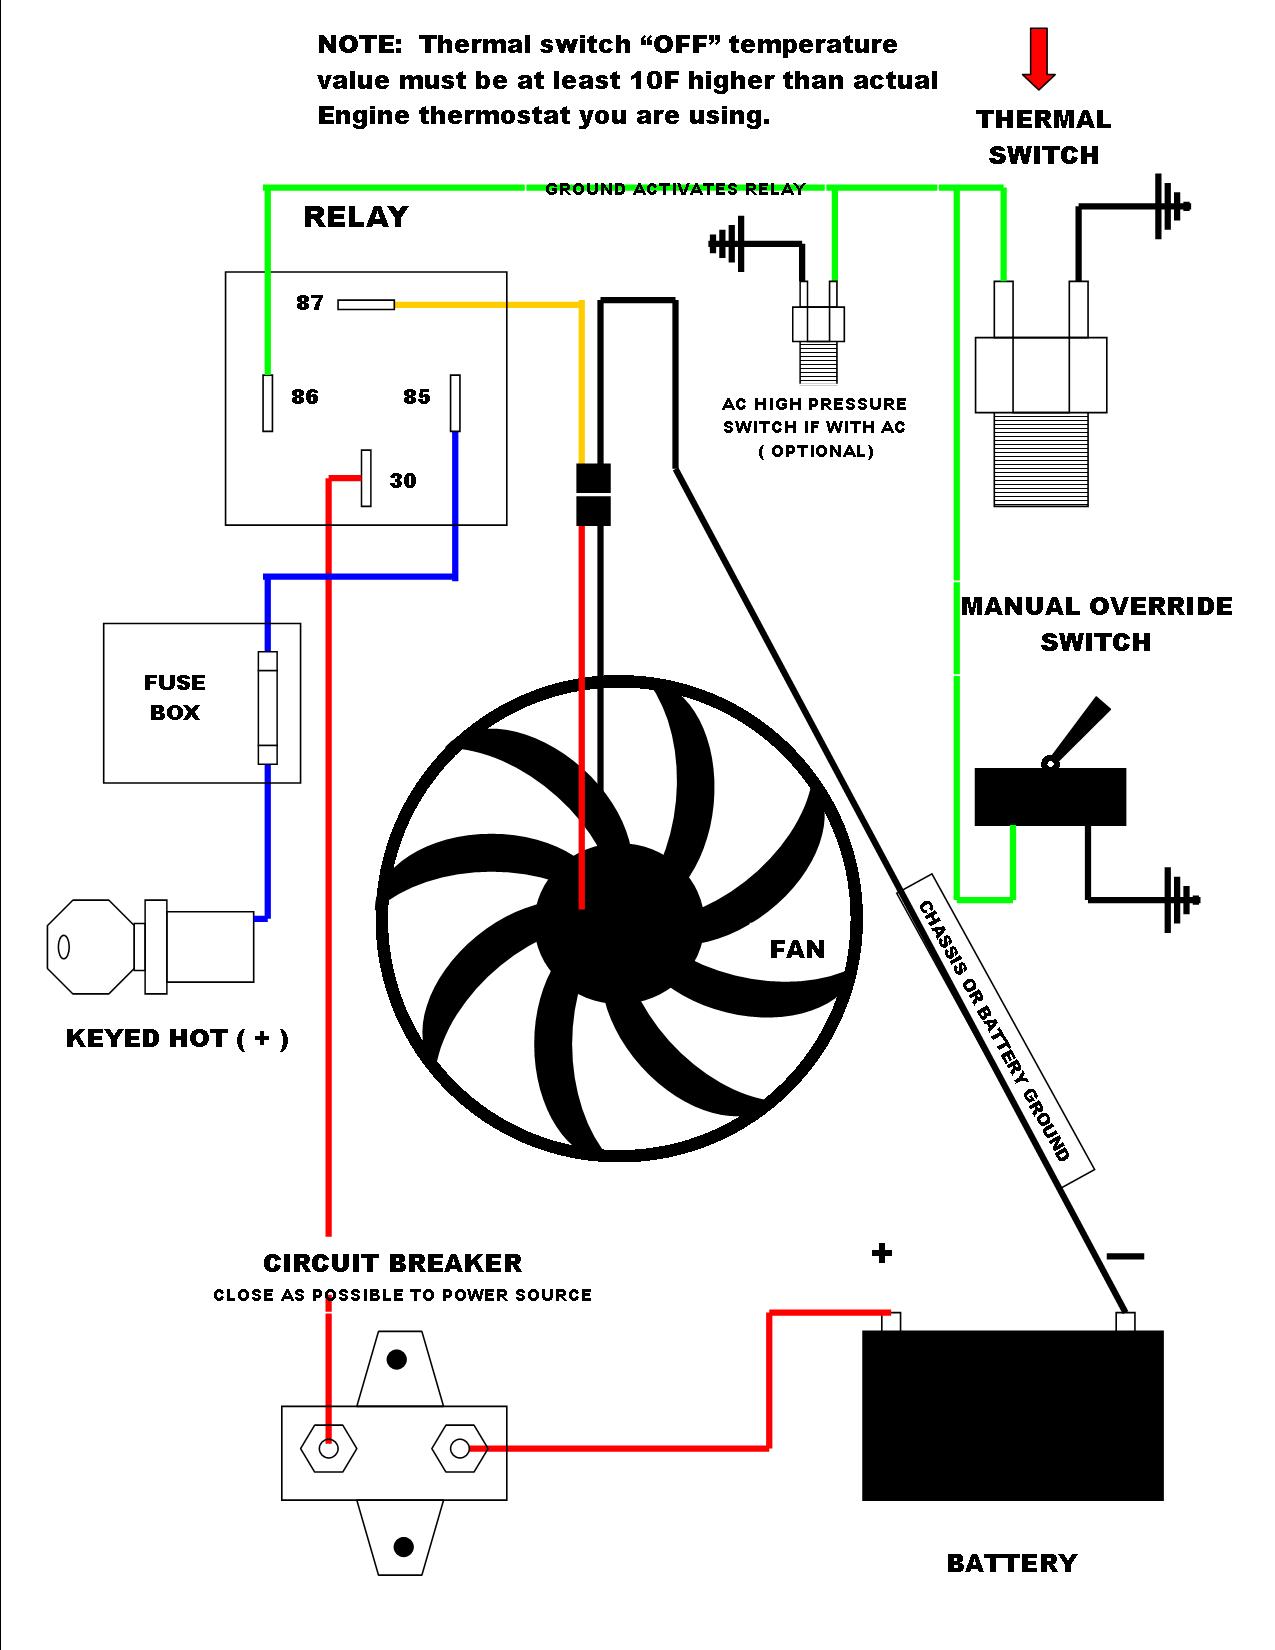 Franklin Electric Qd Control Box Wiring Diagram from www.thirdgen.org